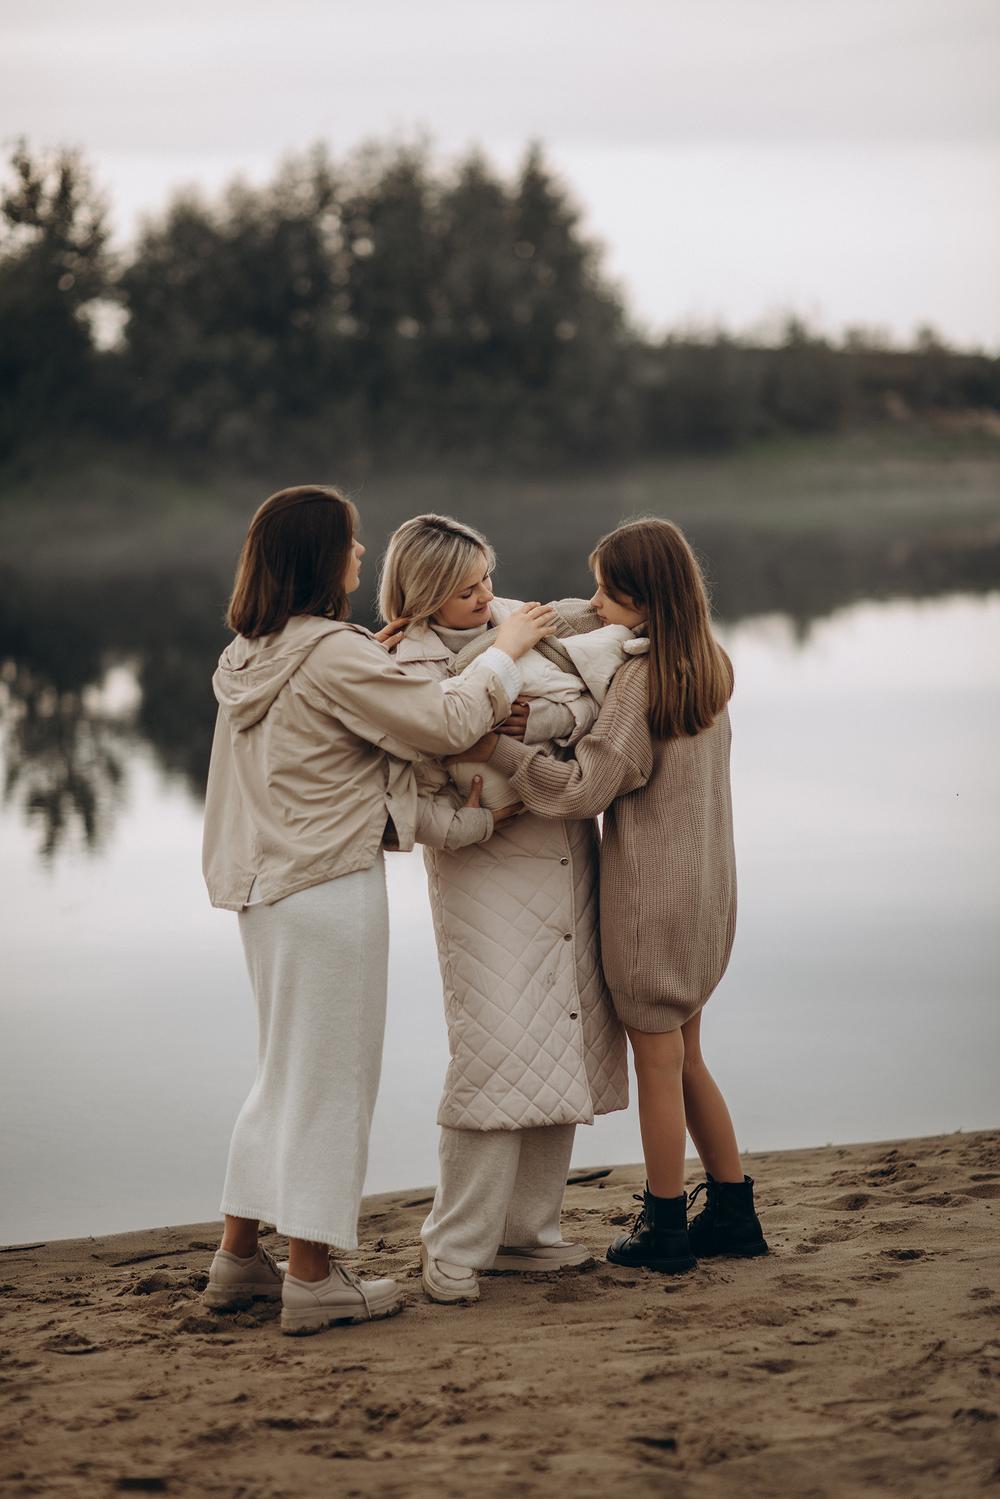 Семейные фотосессии - Татьяна и дочки